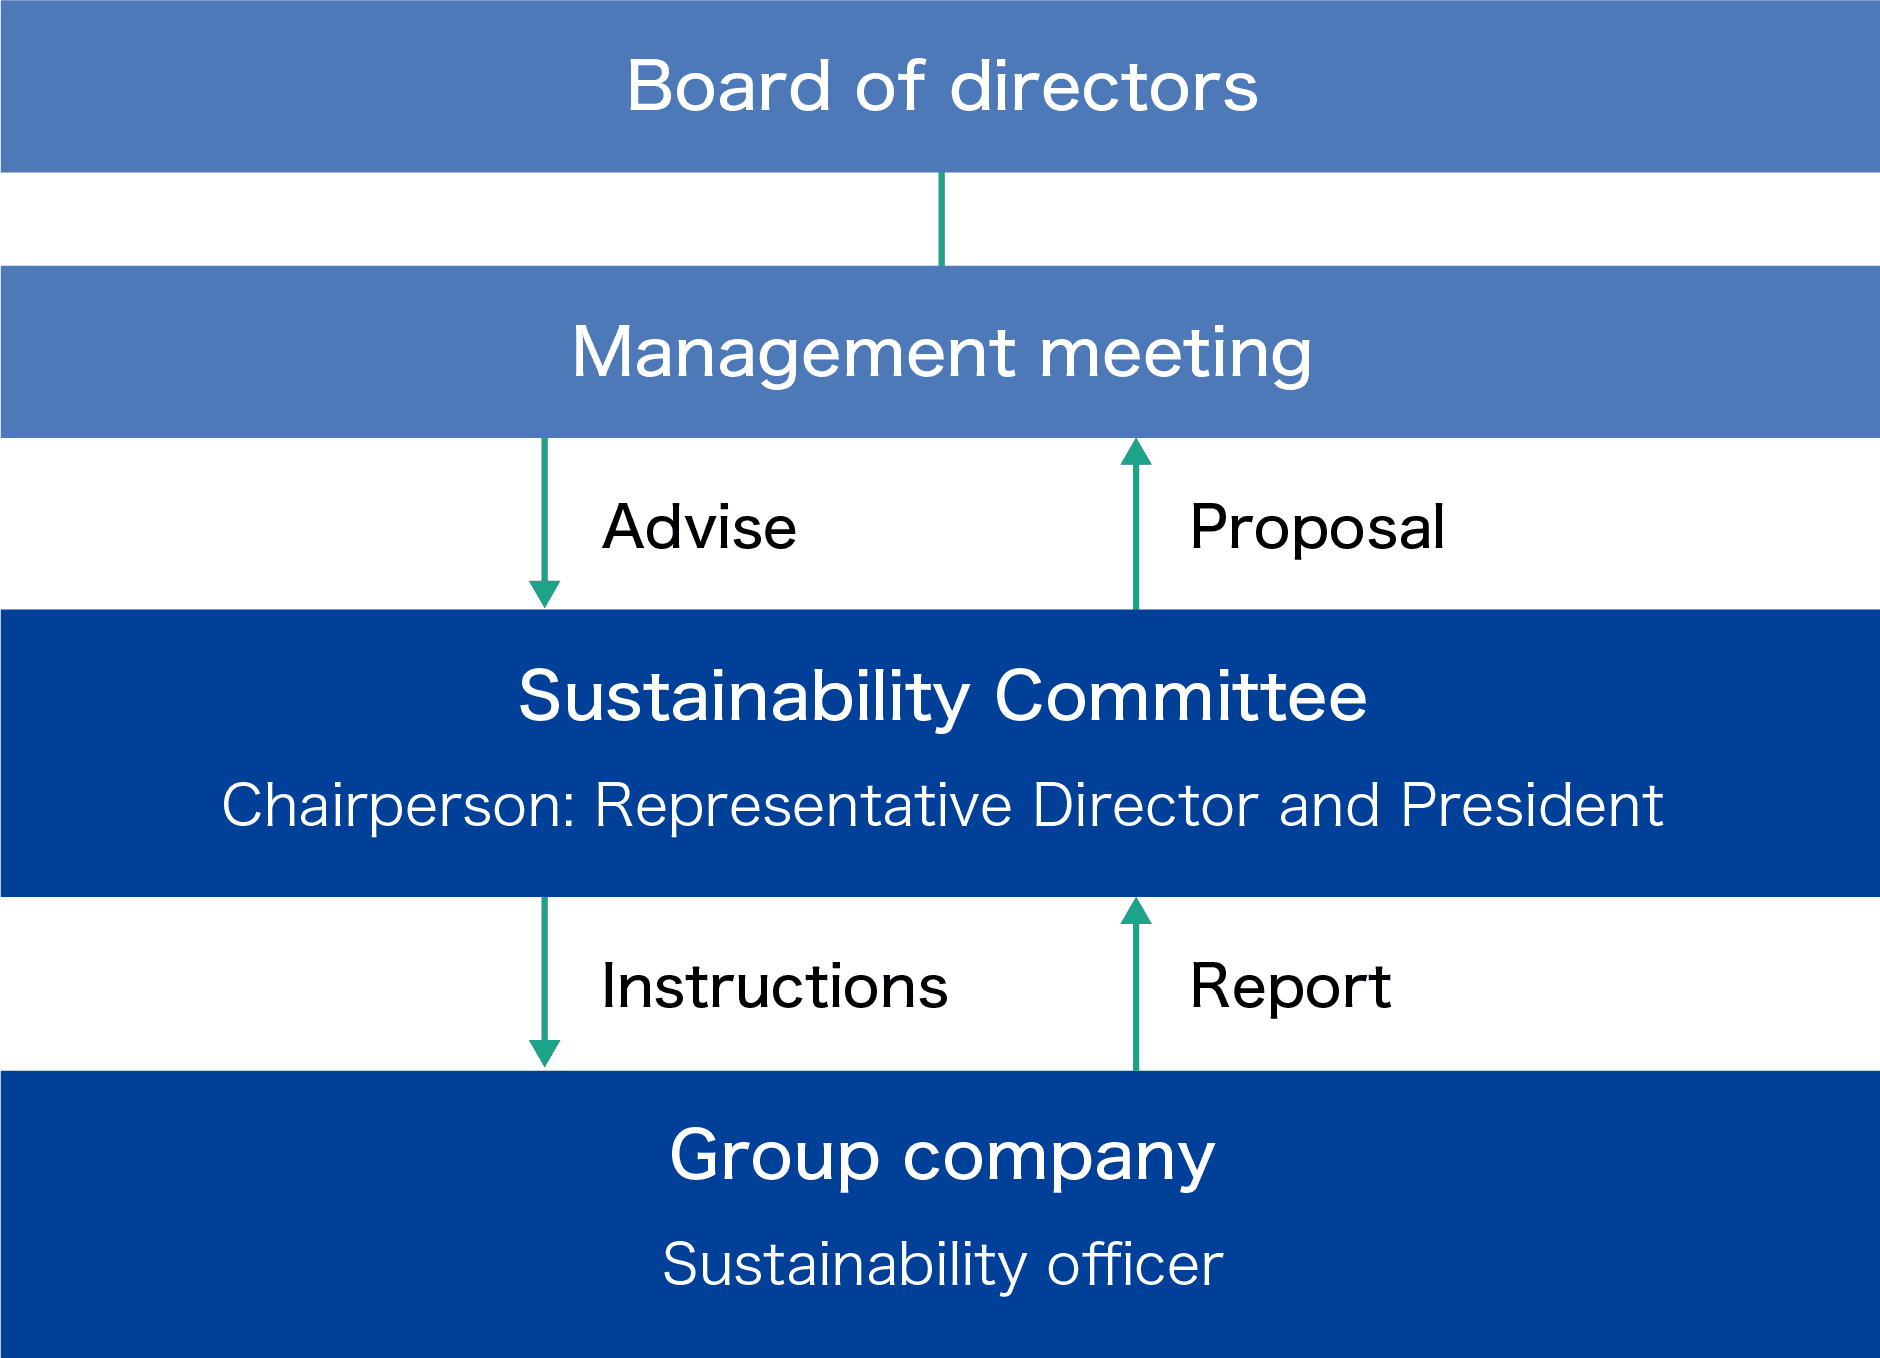 Management role